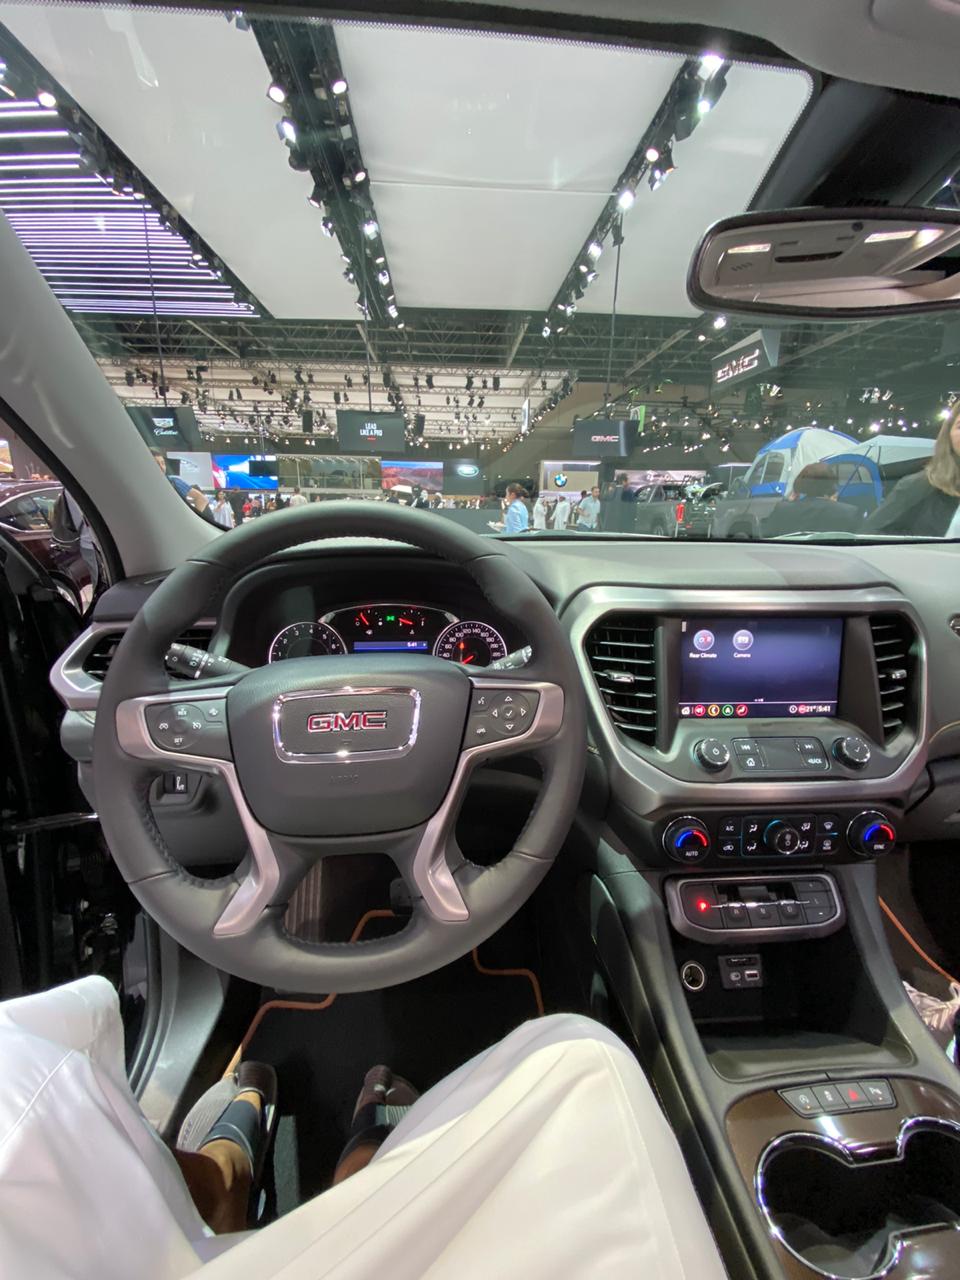 جي ام سي تستعرض اكاديا وسييرا 2020 في معرض دبي الدولي للسيارات 34